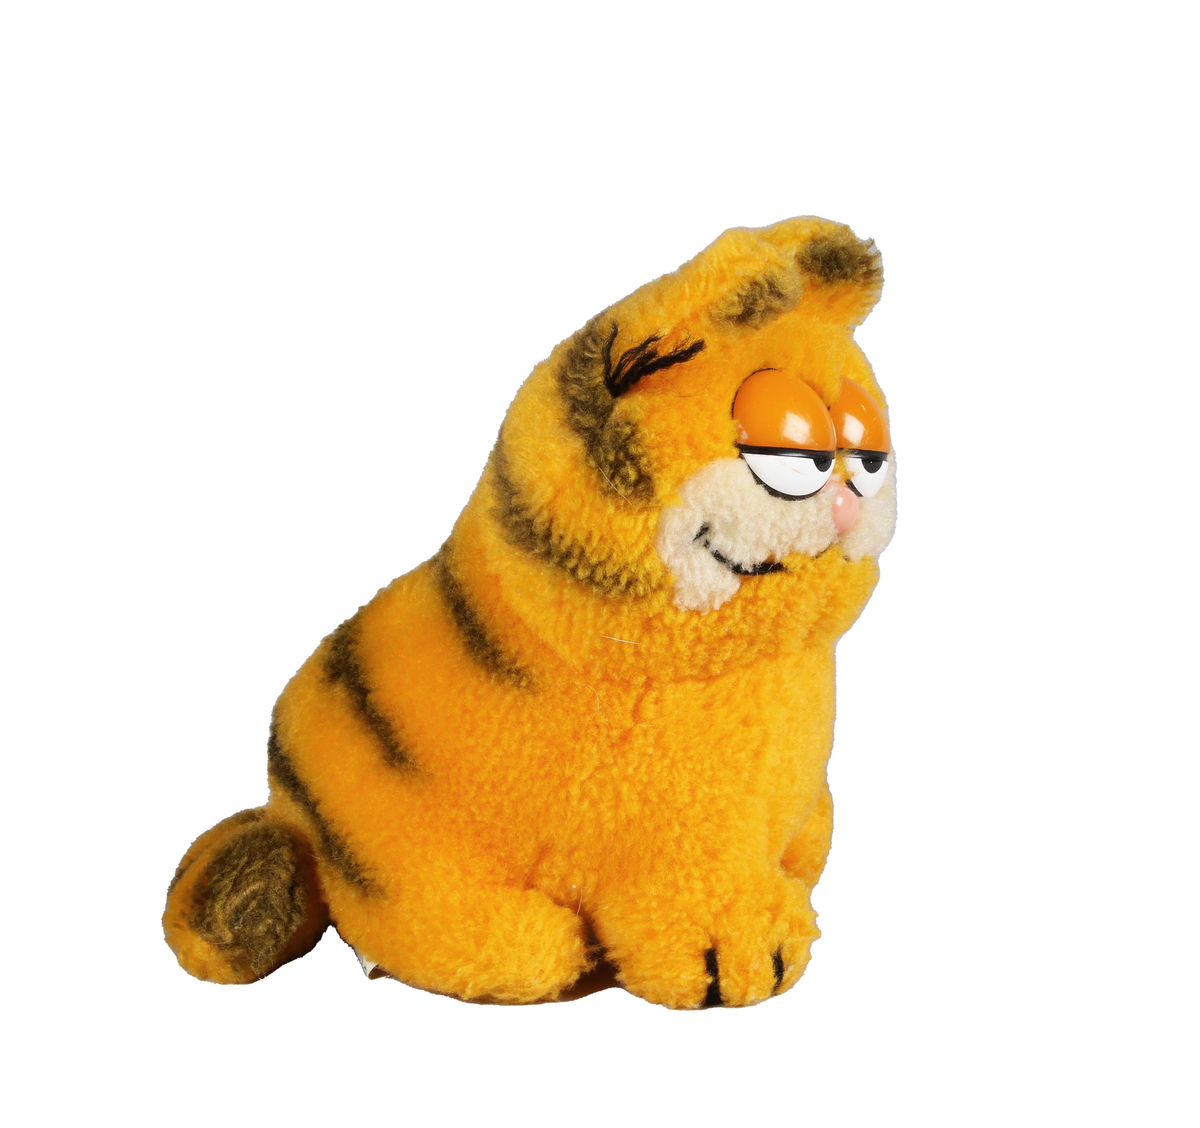 Leksak. Katten Gustaf (Garfield). Gulorange färg med svarta ränder på rygg och svans. Sömniga runda ögon i orangefärgad plast och ljusröd nos.